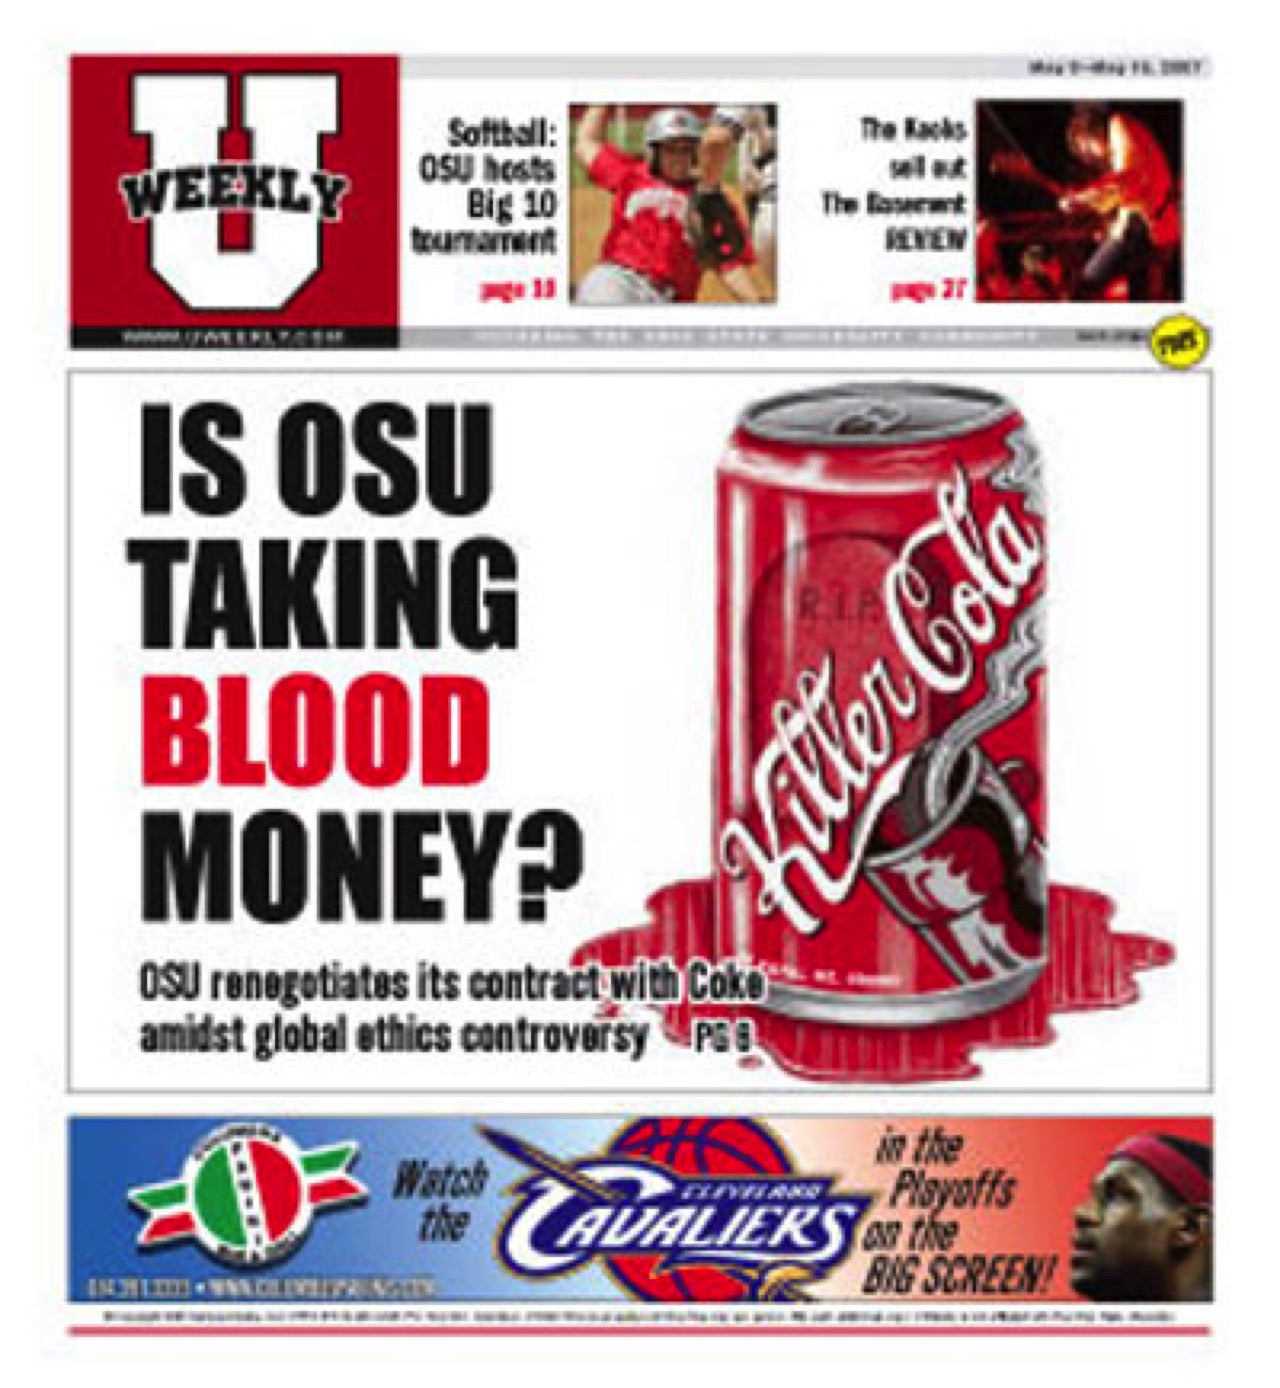 SINALTRAINAL vs. The Coca-Cola Company: 2003-Present